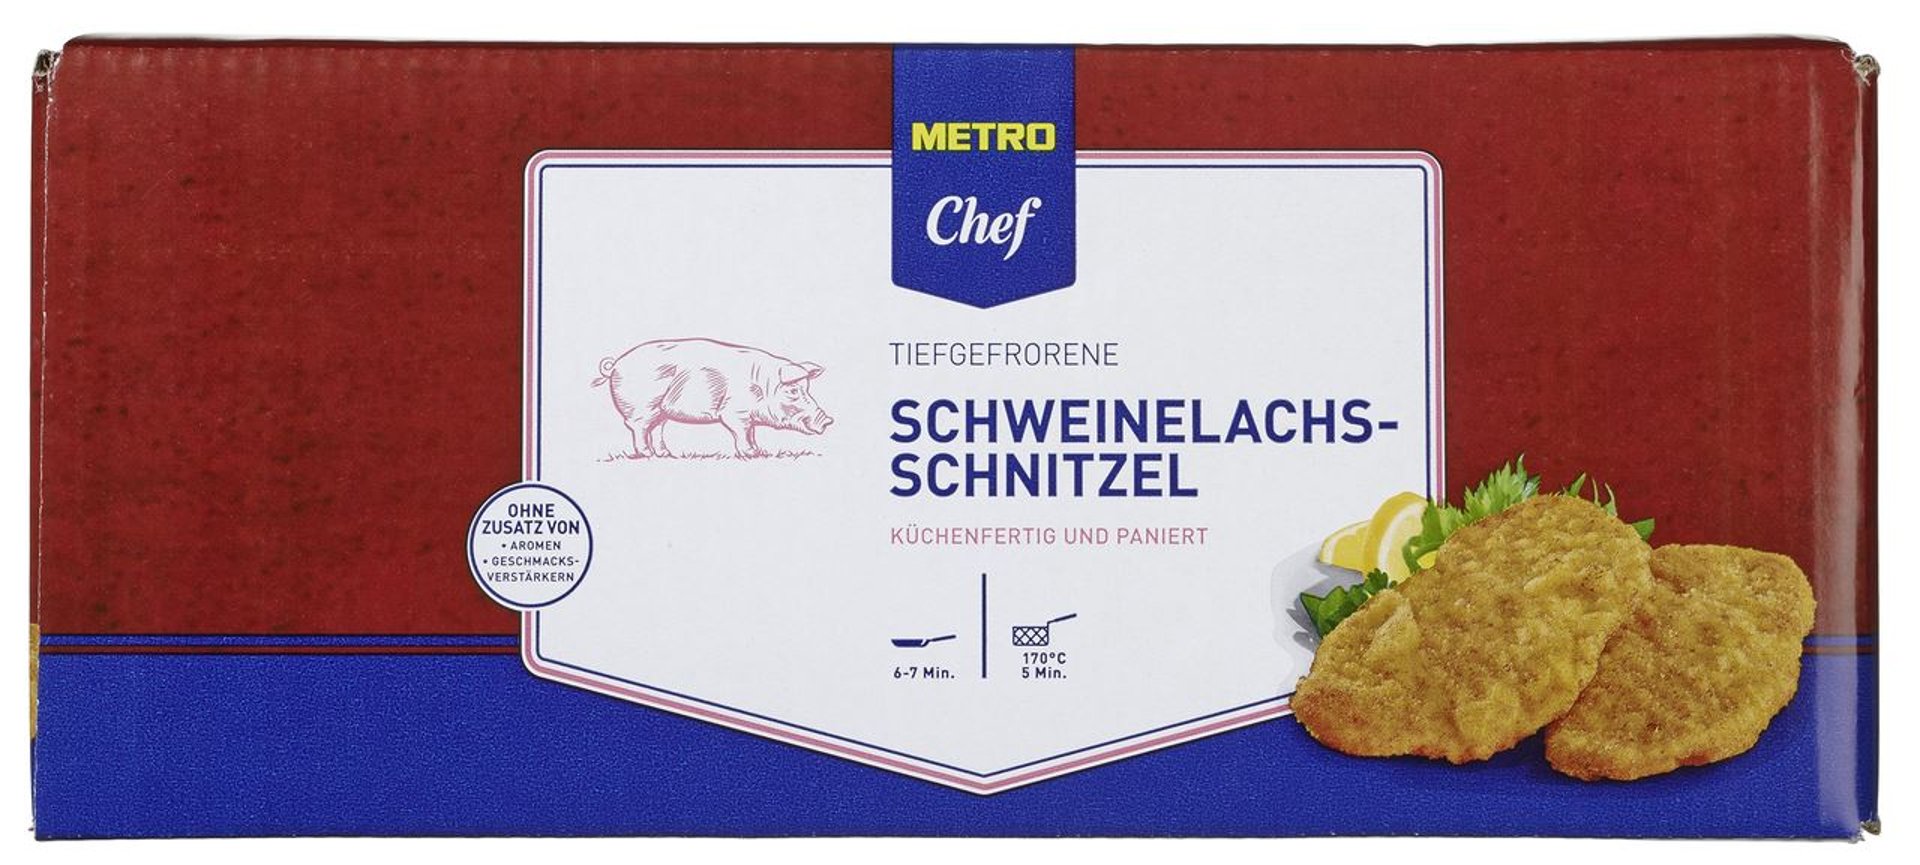 40 ca. paniert, 200 g Stück Lachsschnitzel tiefgefroren, à METRO Chef - - kg Karton Schweine 8